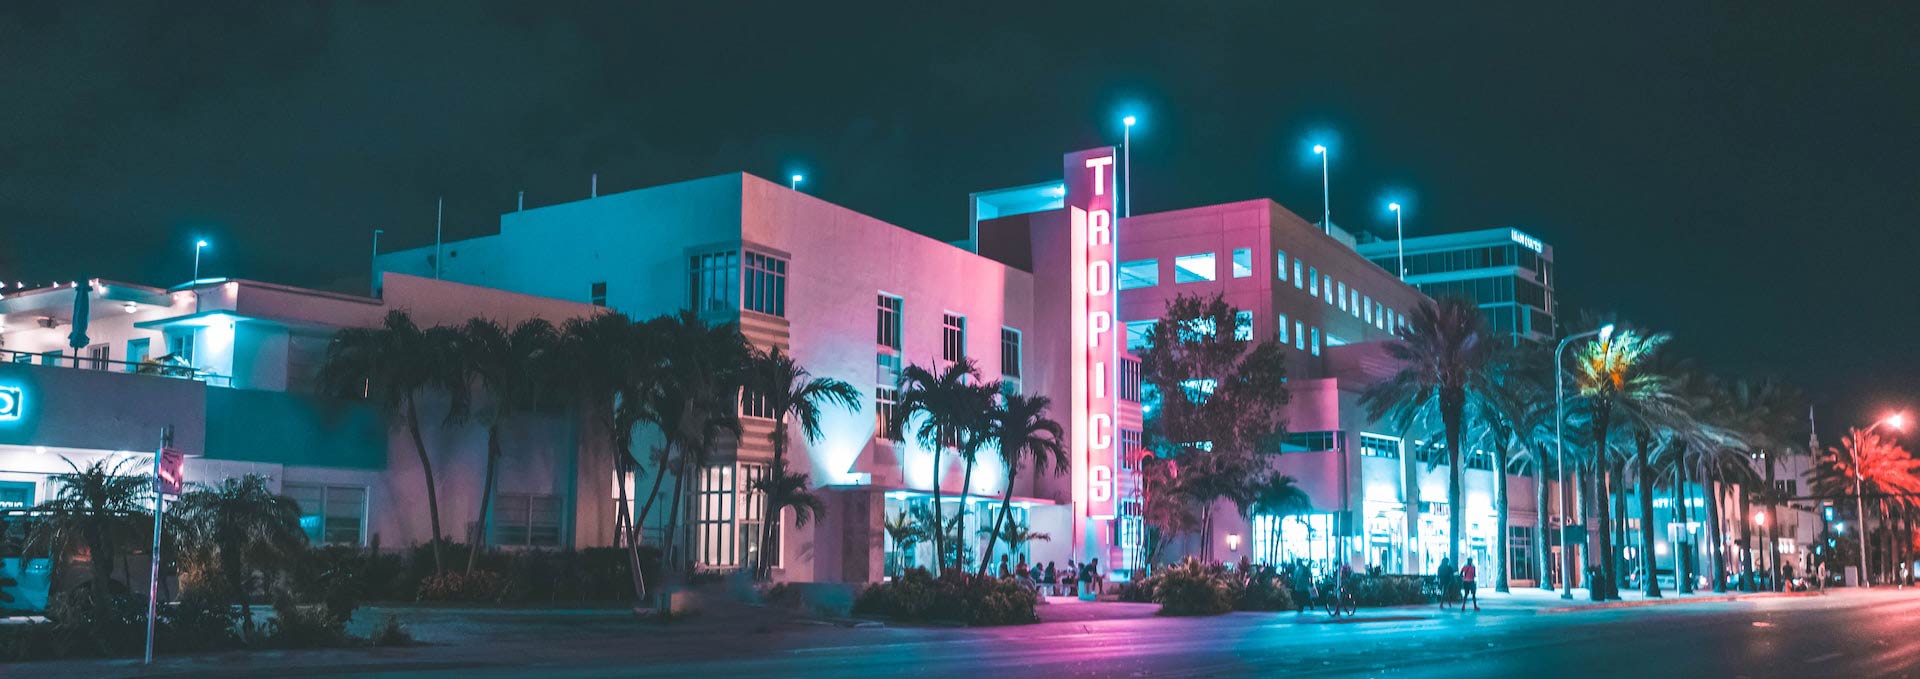 迈阿密海滩酒店在夜间